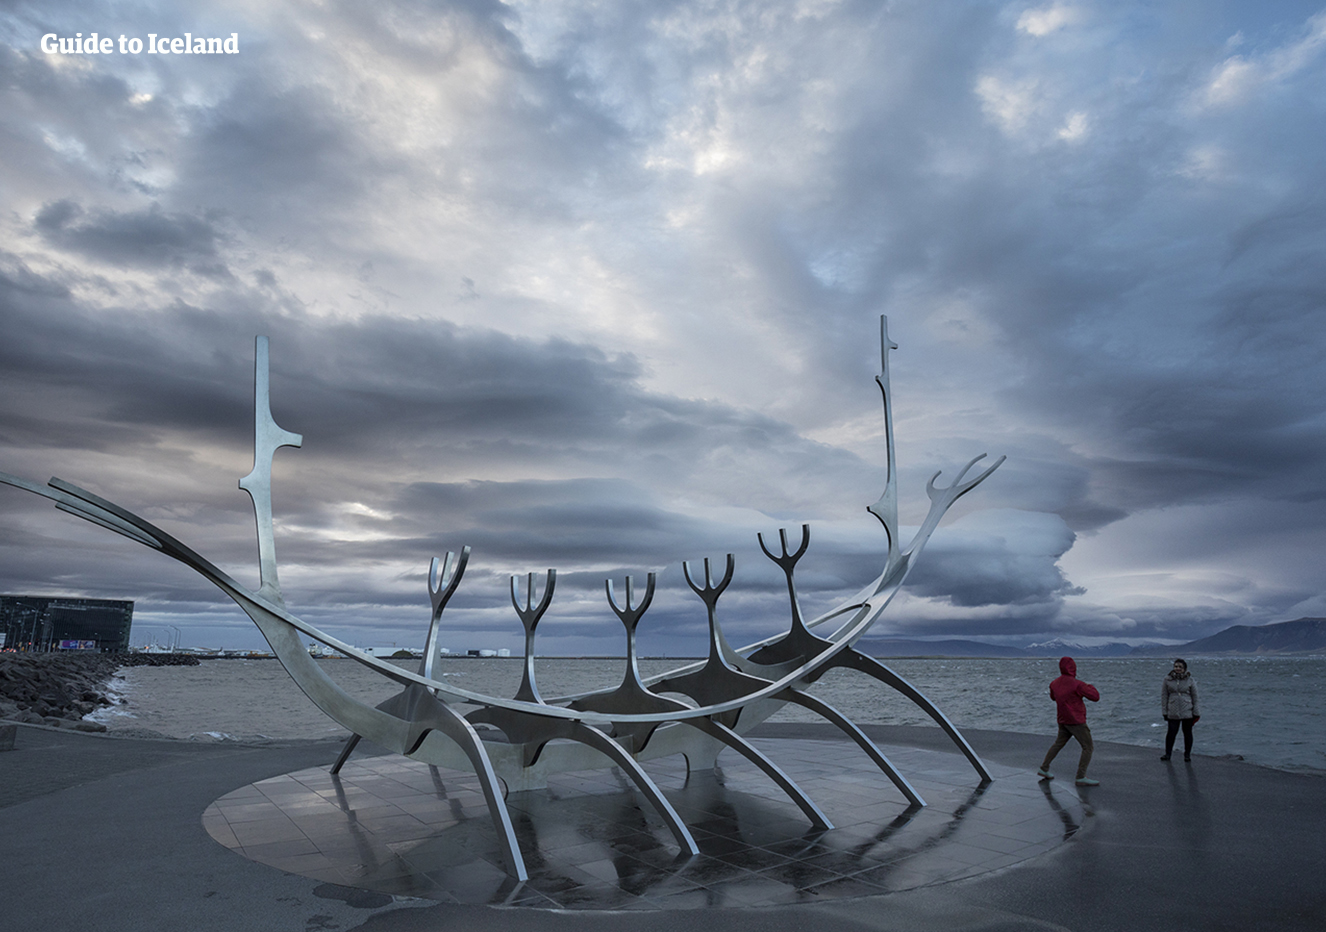 De Zonnevaarder, een populair beeldhouwwerk en onderwerp van foto's voor bezoekers van IJsland.